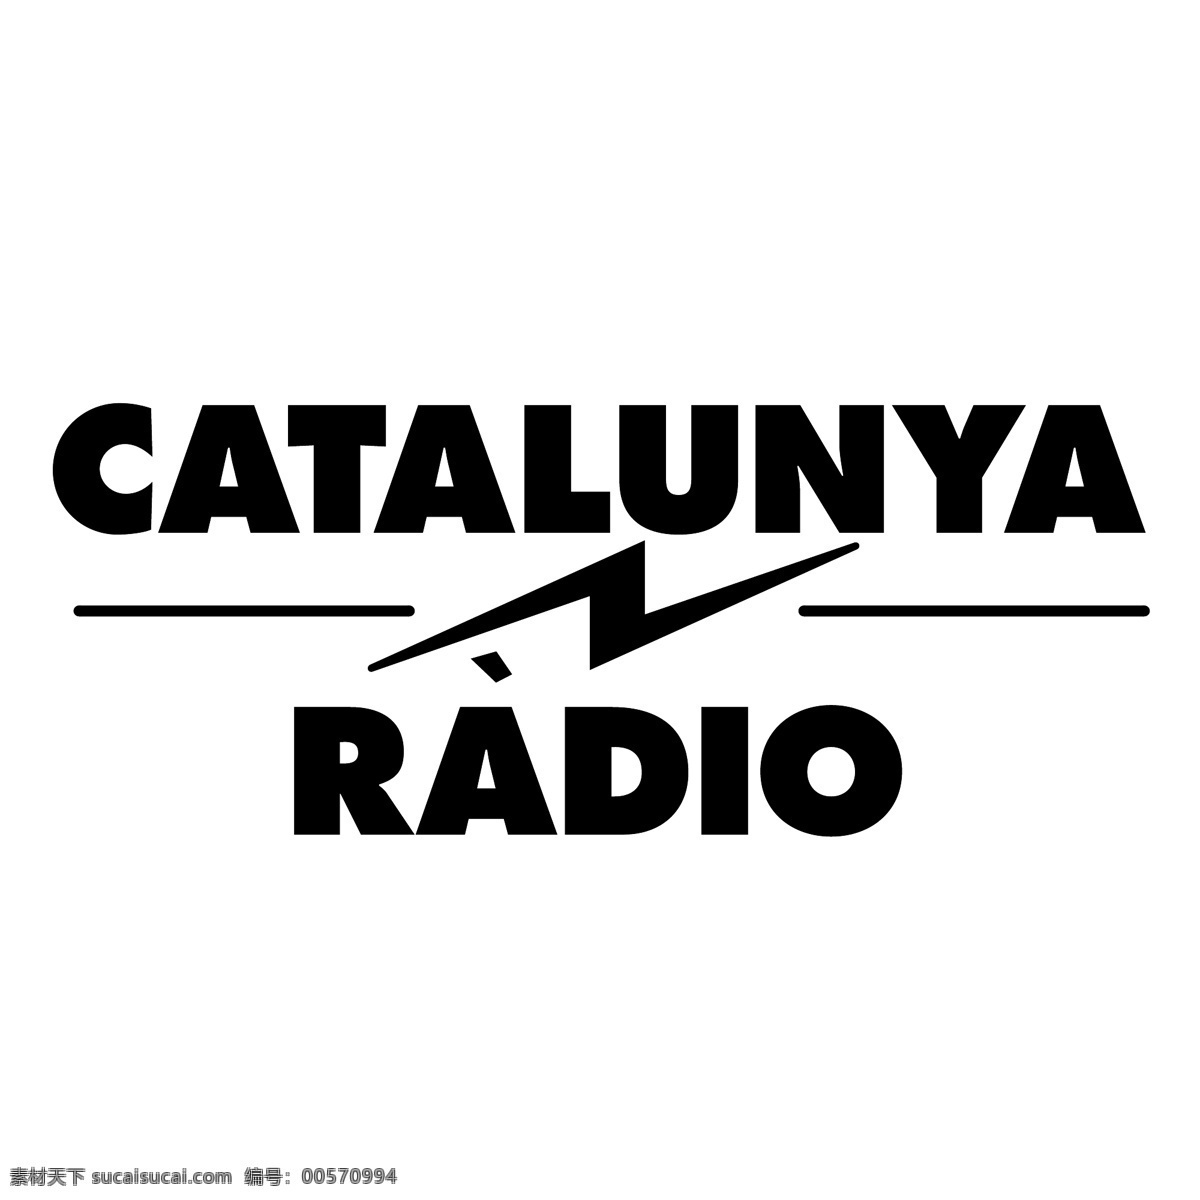 加泰罗尼亚 电台 无线电 矢量图 其他矢量图